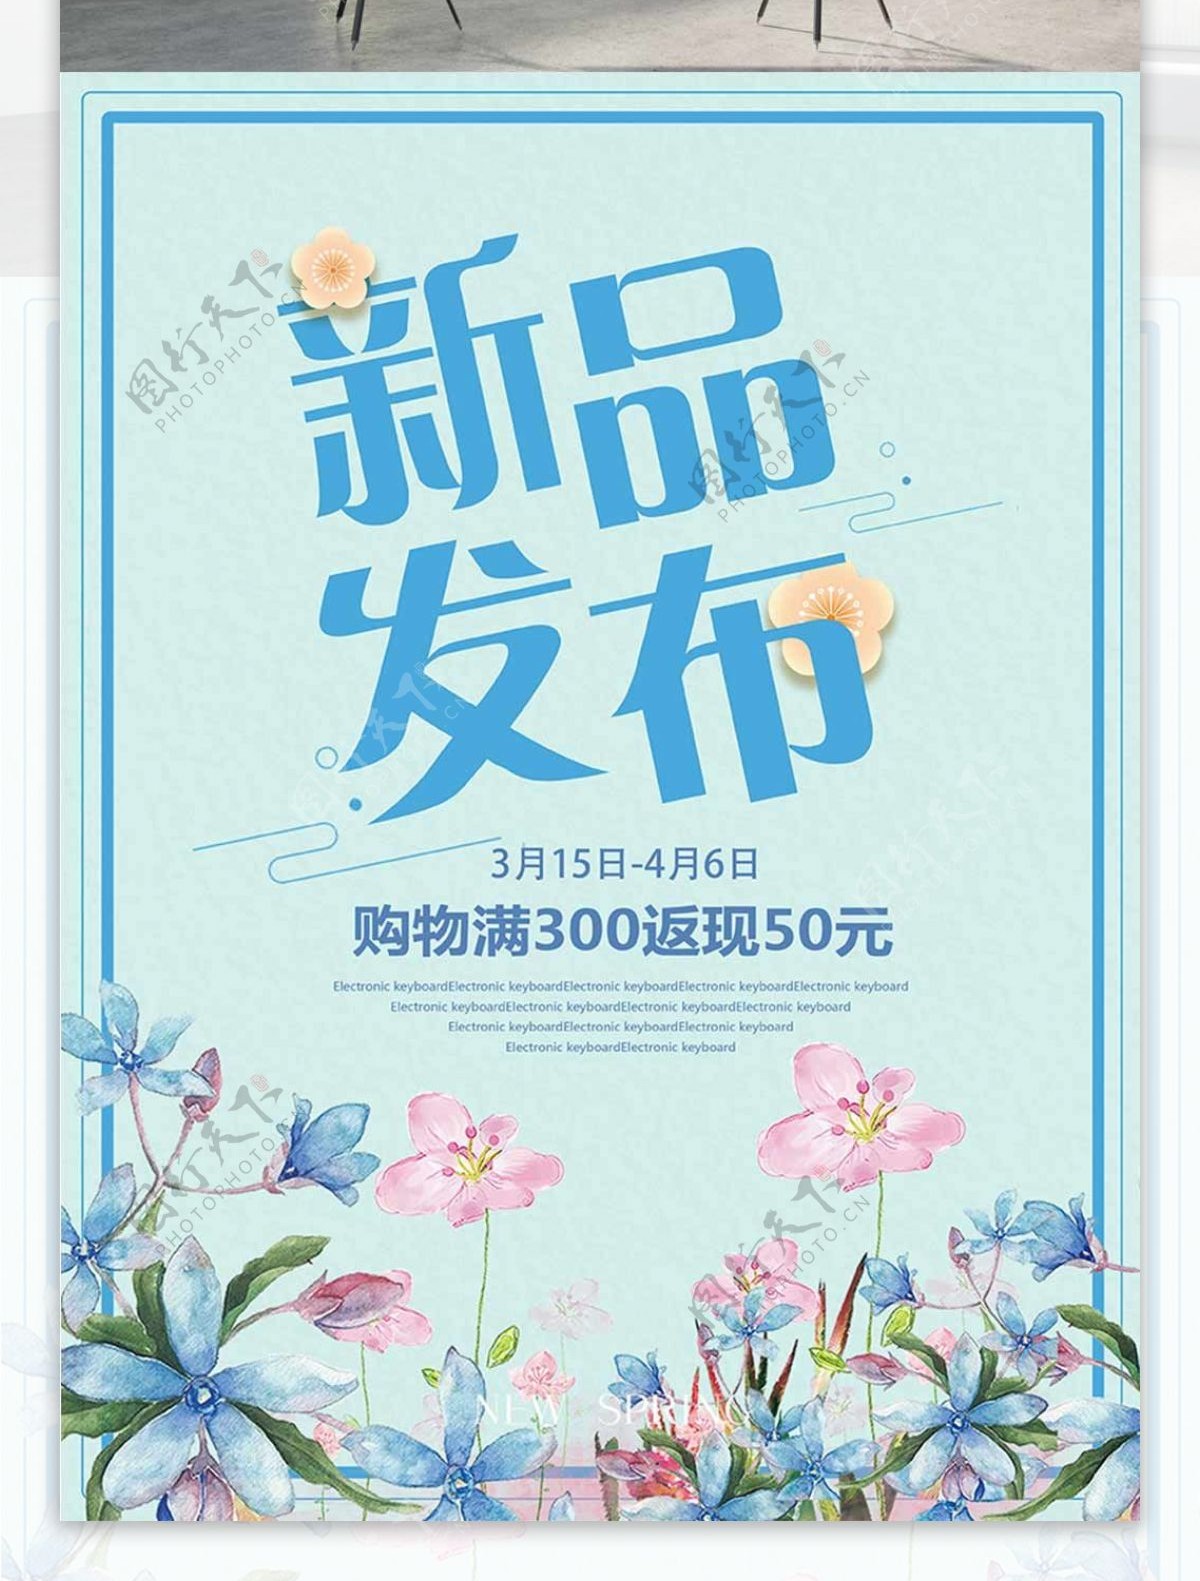 新品发布浅蓝色小清新水彩花春季促销宣传服装店打折海报设计